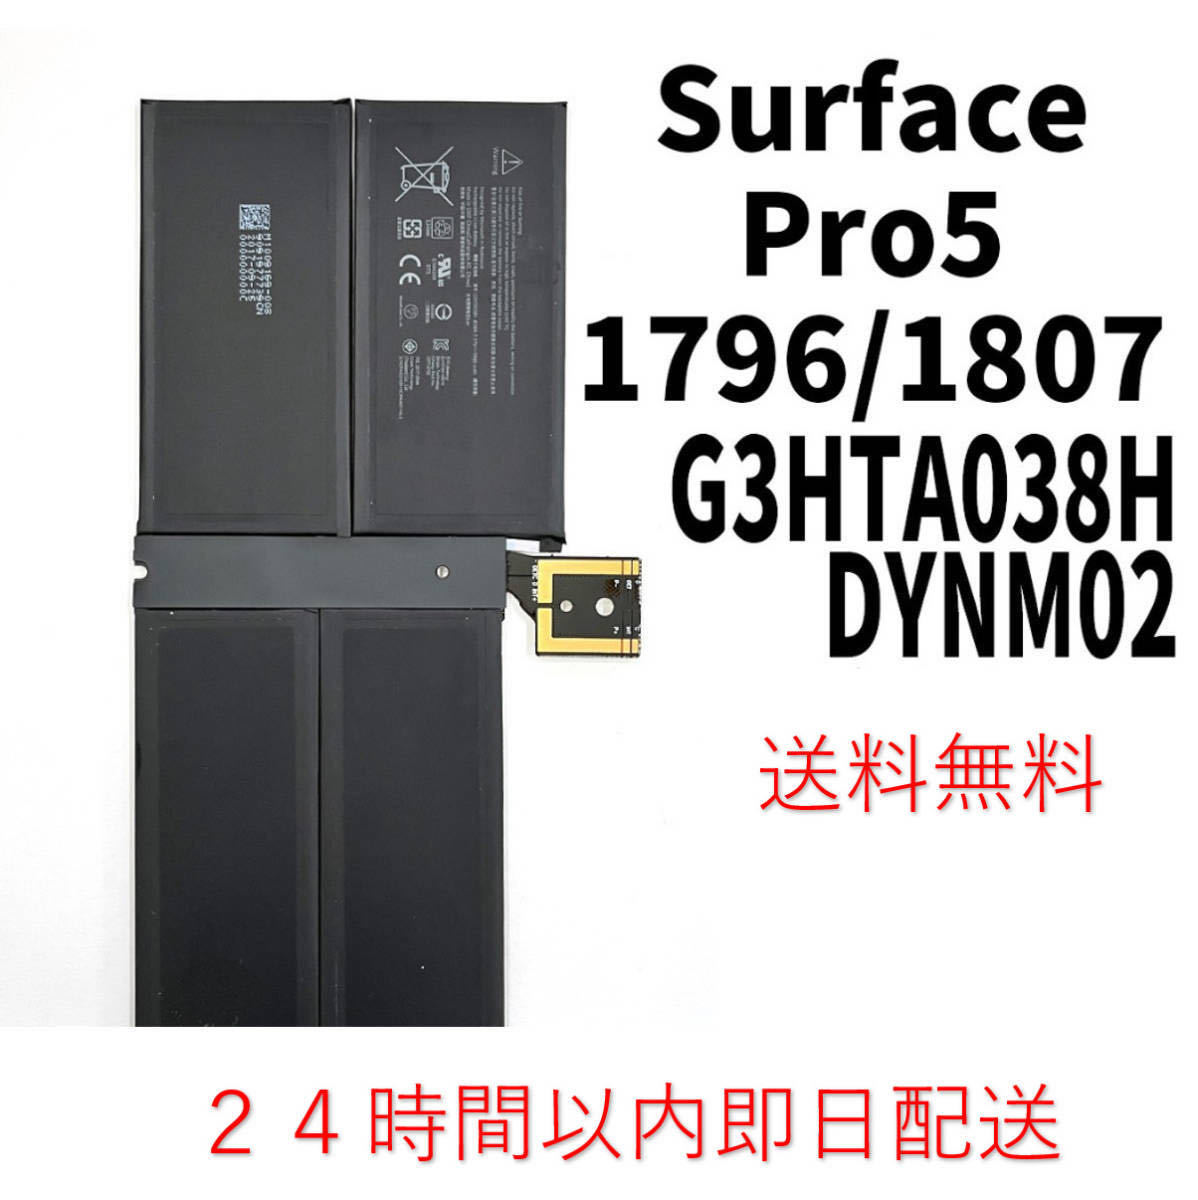  внутри страны  в тот же день   отправка ! оригинальный  новый товар !Surface Pro5  батарея   G3HTA038H DYNM02 1796 1807  аккумулятор  замена   сам товар  для  встроенный  battery